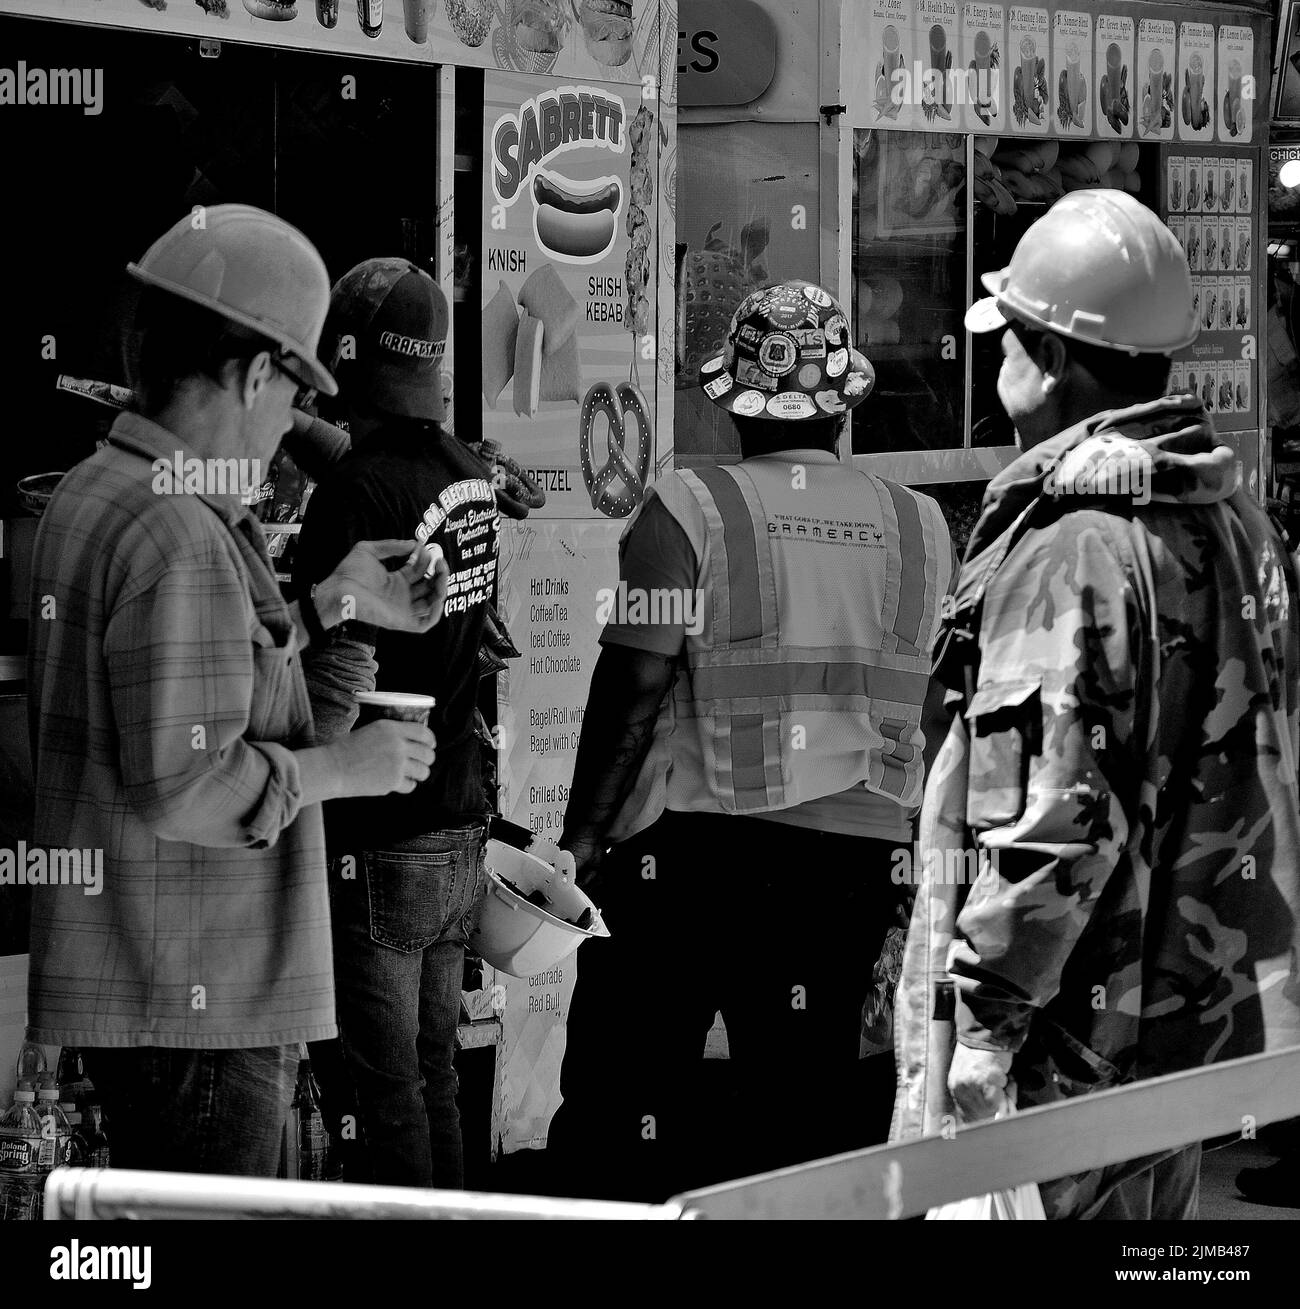 Une photo en échelle de gris des ouvriers du bâtiment qui s'arrêtent pour un déjeuner dans un stand de hot dog à New York, aux États-Unis Banque D'Images